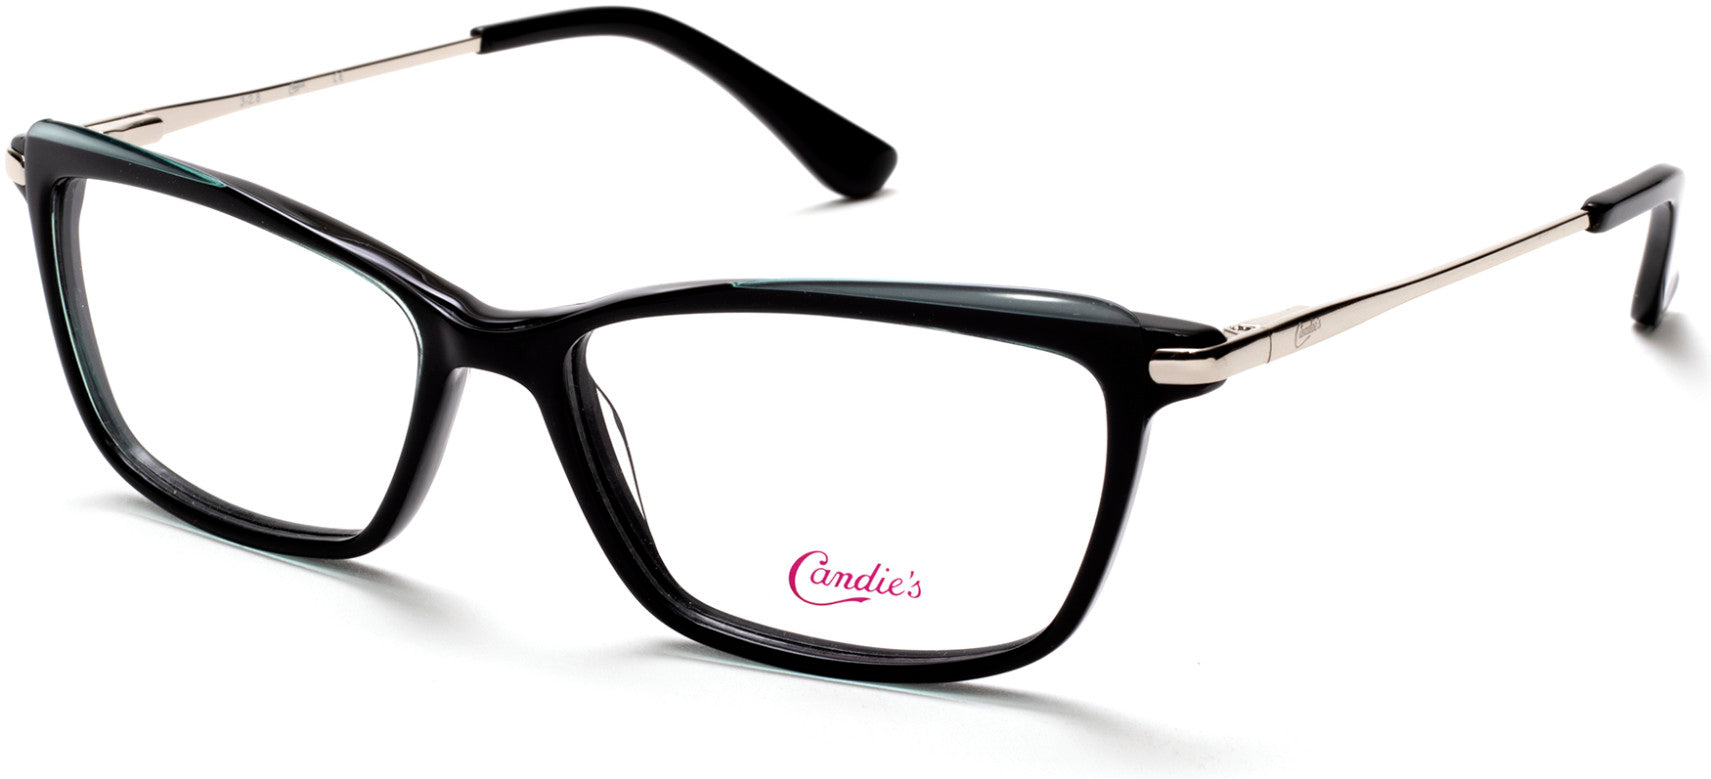 Candies CA0174 Geometric Eyeglasses 001-001 - Shiny Black